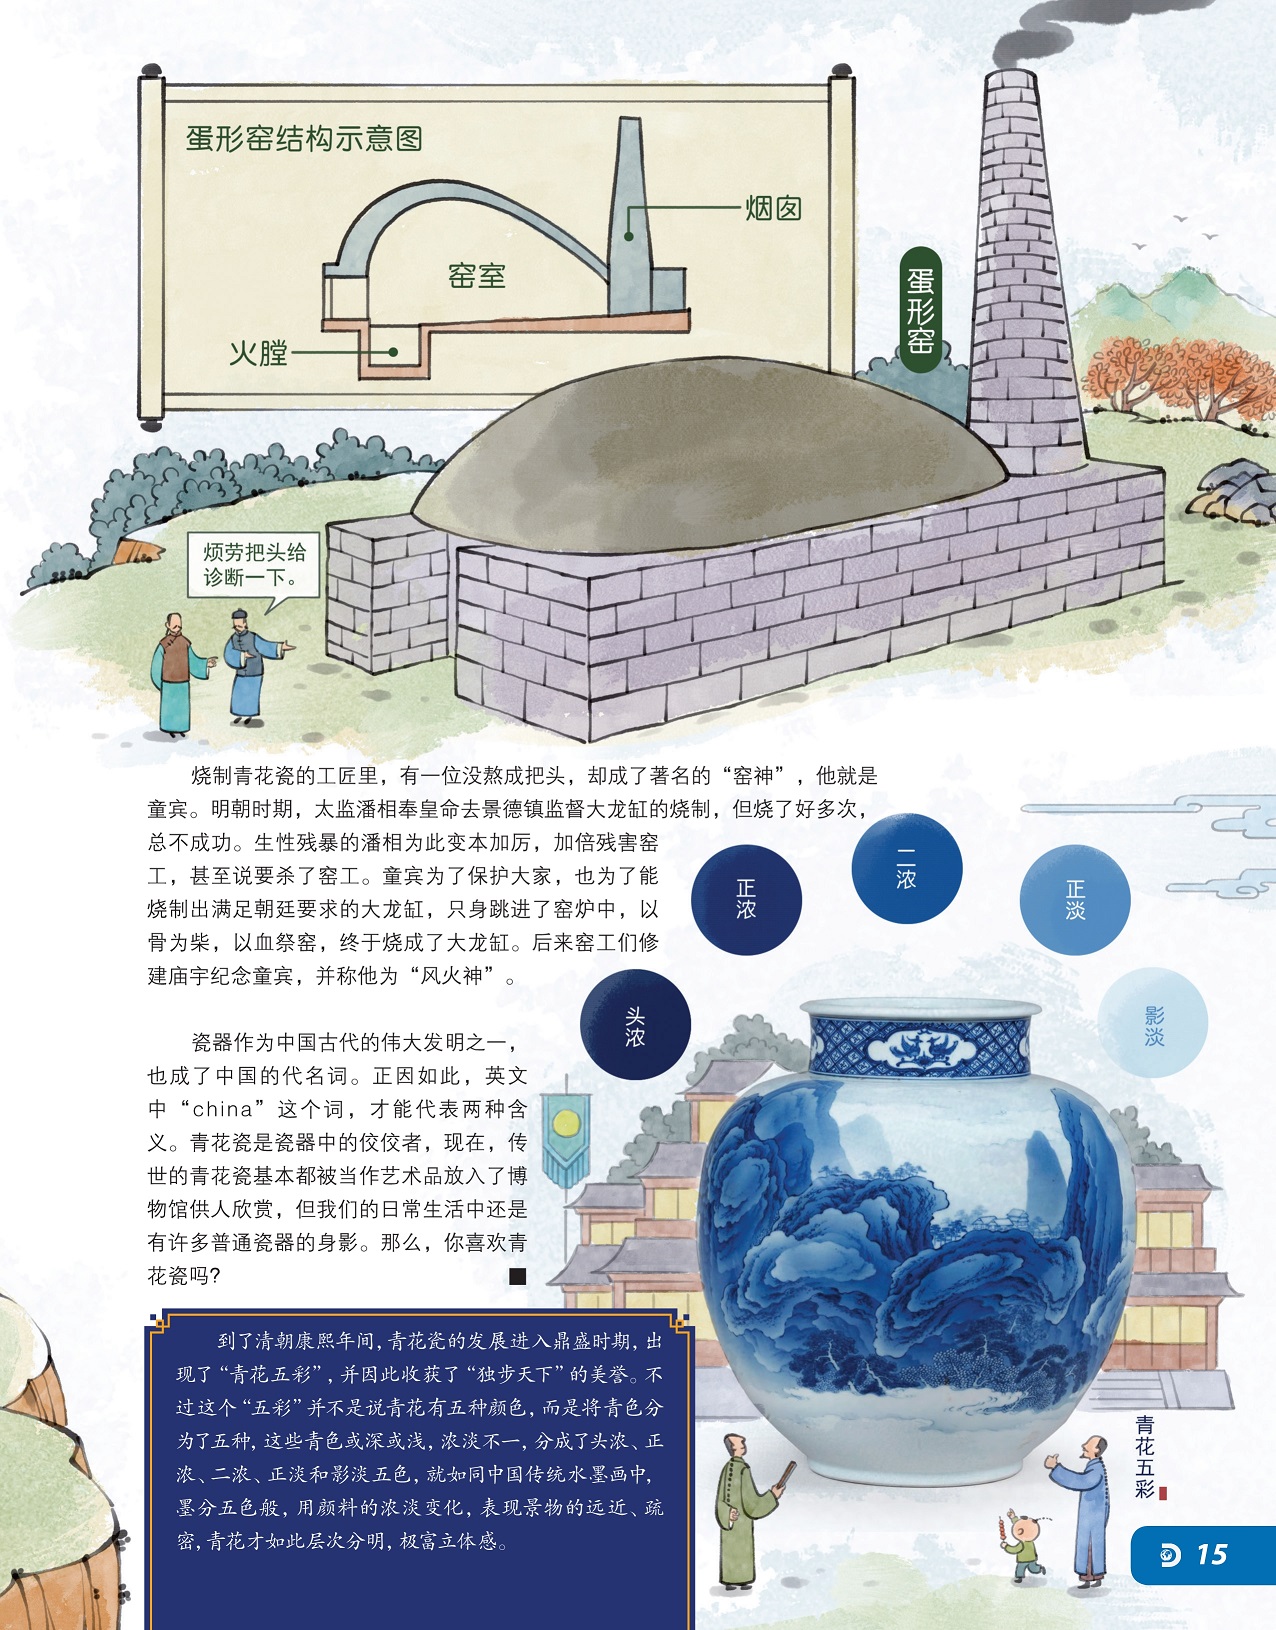 童宾成为著名的“窑神”,瓷器是中国古代伟大发明之一